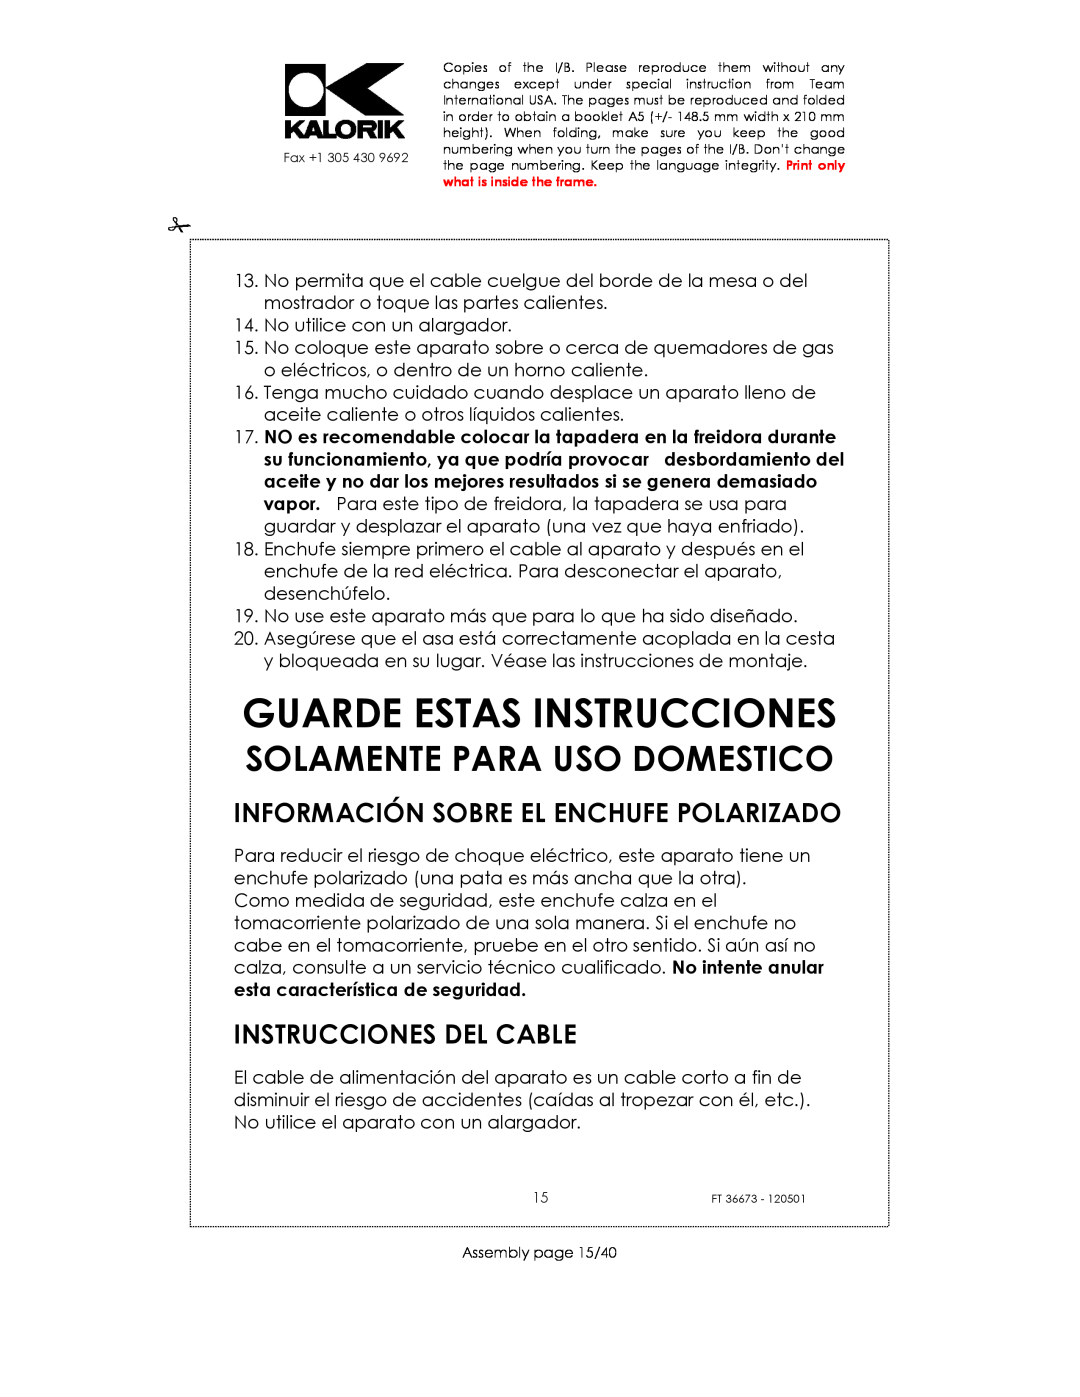 Kalorik USK FT 36673 manual Guarde Estas Instrucciones, Información Sobre El Enchufe Polarizado, Instrucciones Del Cable 